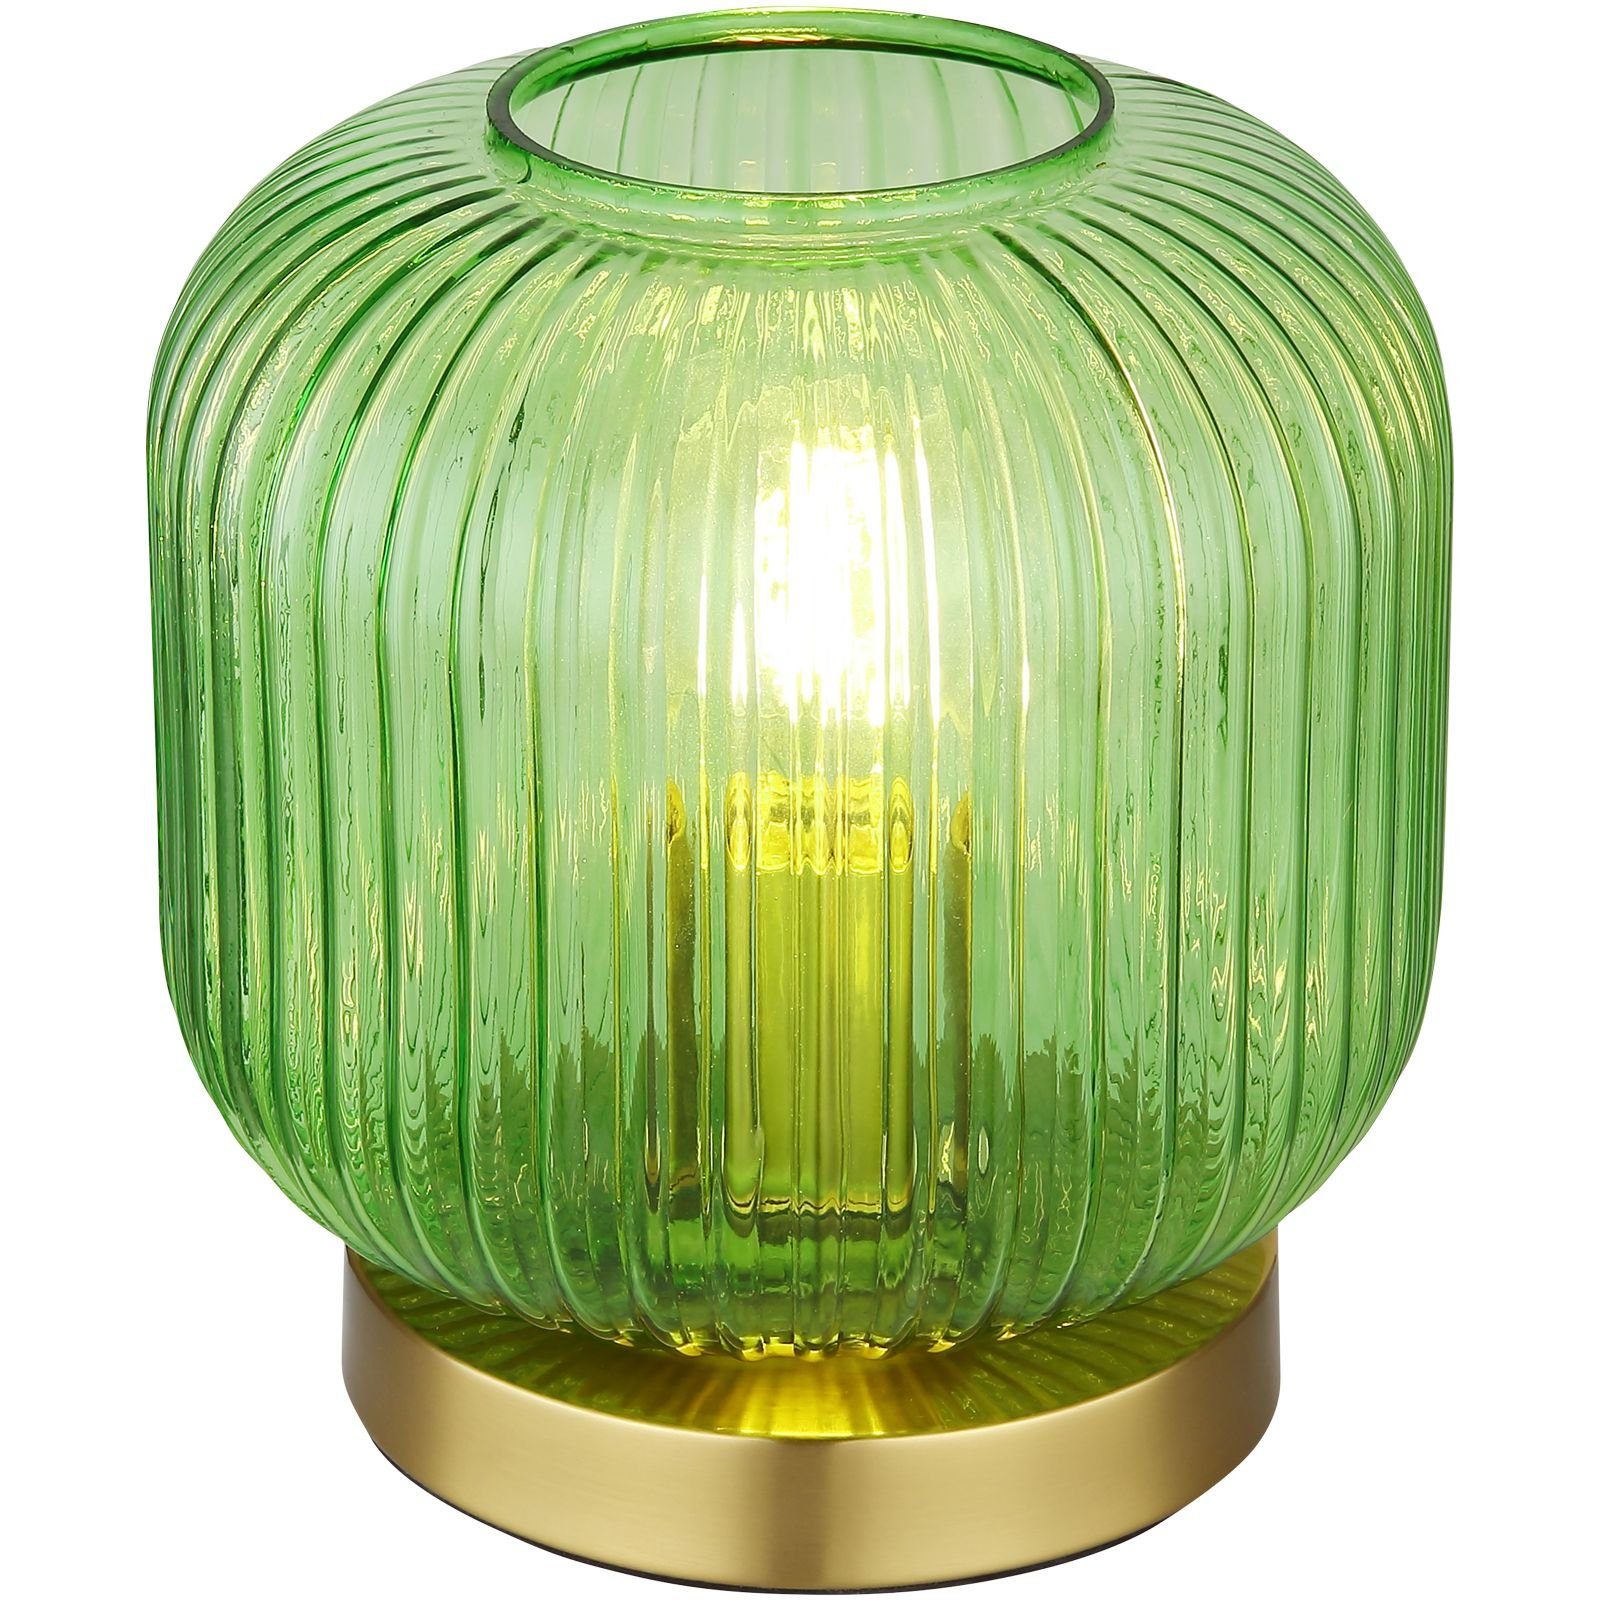 Messing Tischlampe Tischleuchte Globo Retro Wohnzimmer Tischleuchte Grün GLOBO Glas